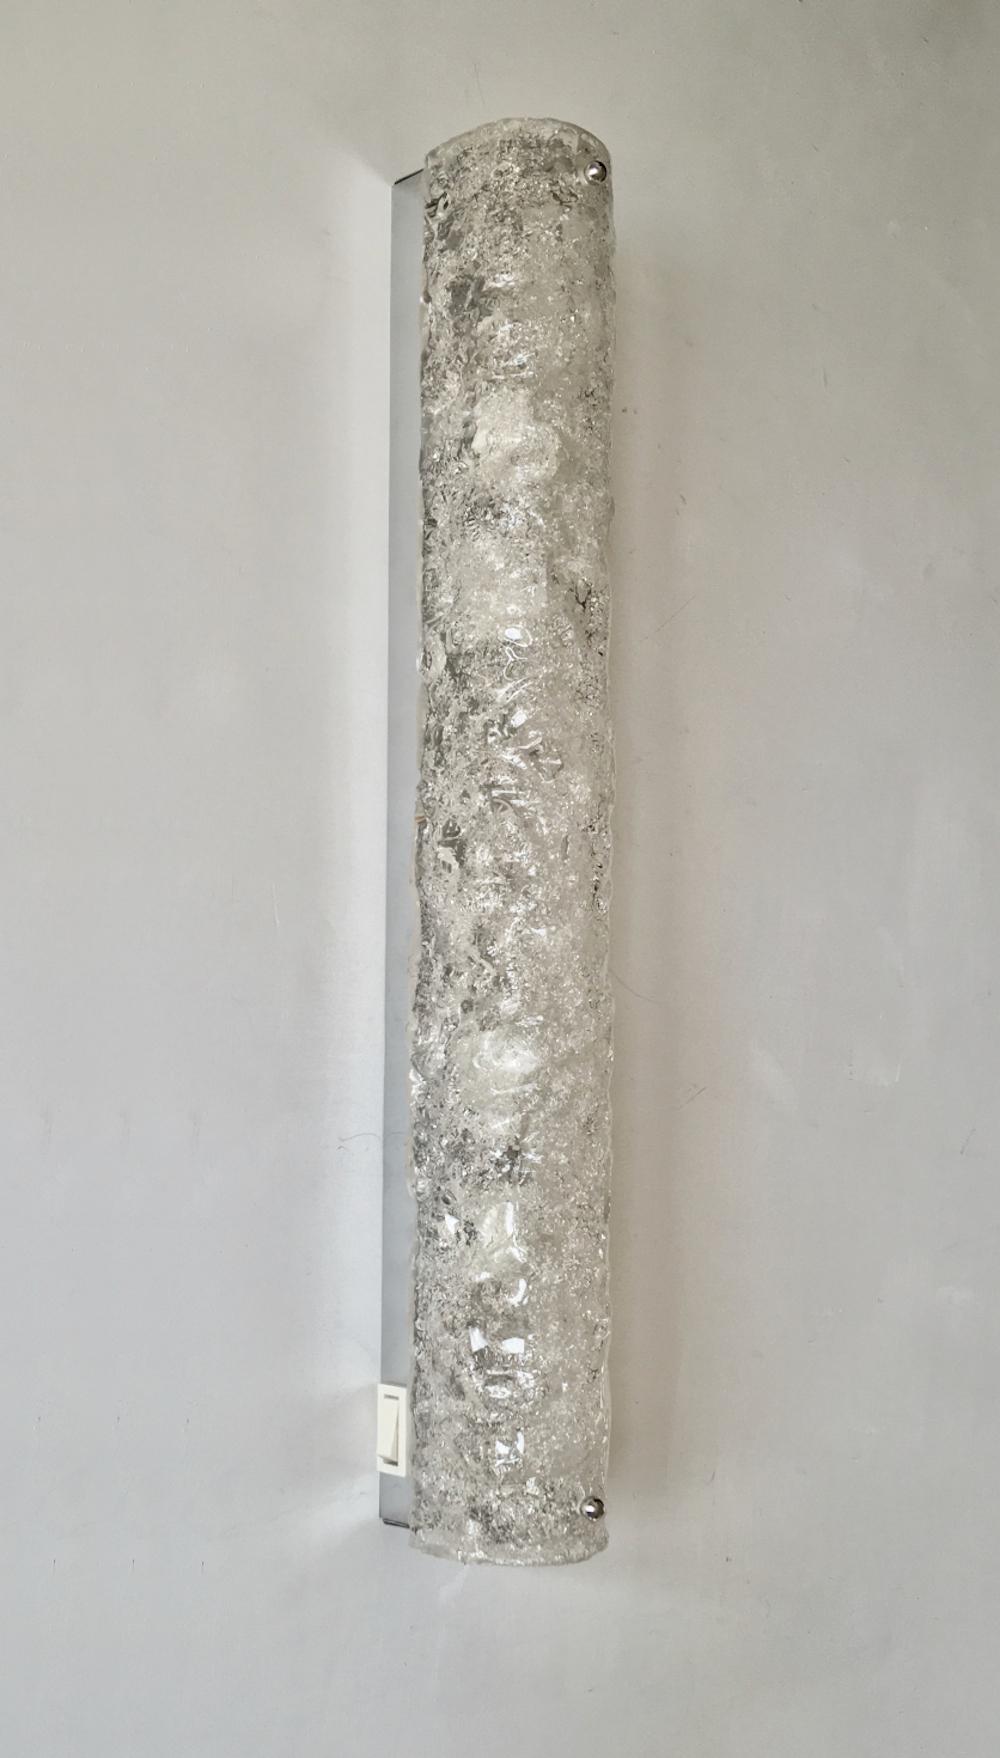 Lange, schlanke Eisglas-Leuchte von Hillebrand, Deutschland, 1960er Jahre. 

Gewölbter Glasschirm aus geblasenem und strukturiertem Glas über einer silberfarbenen Chromplatte. Weißer Schalter auf einer Seite. Auf dem Hauptbild fällt natürliches